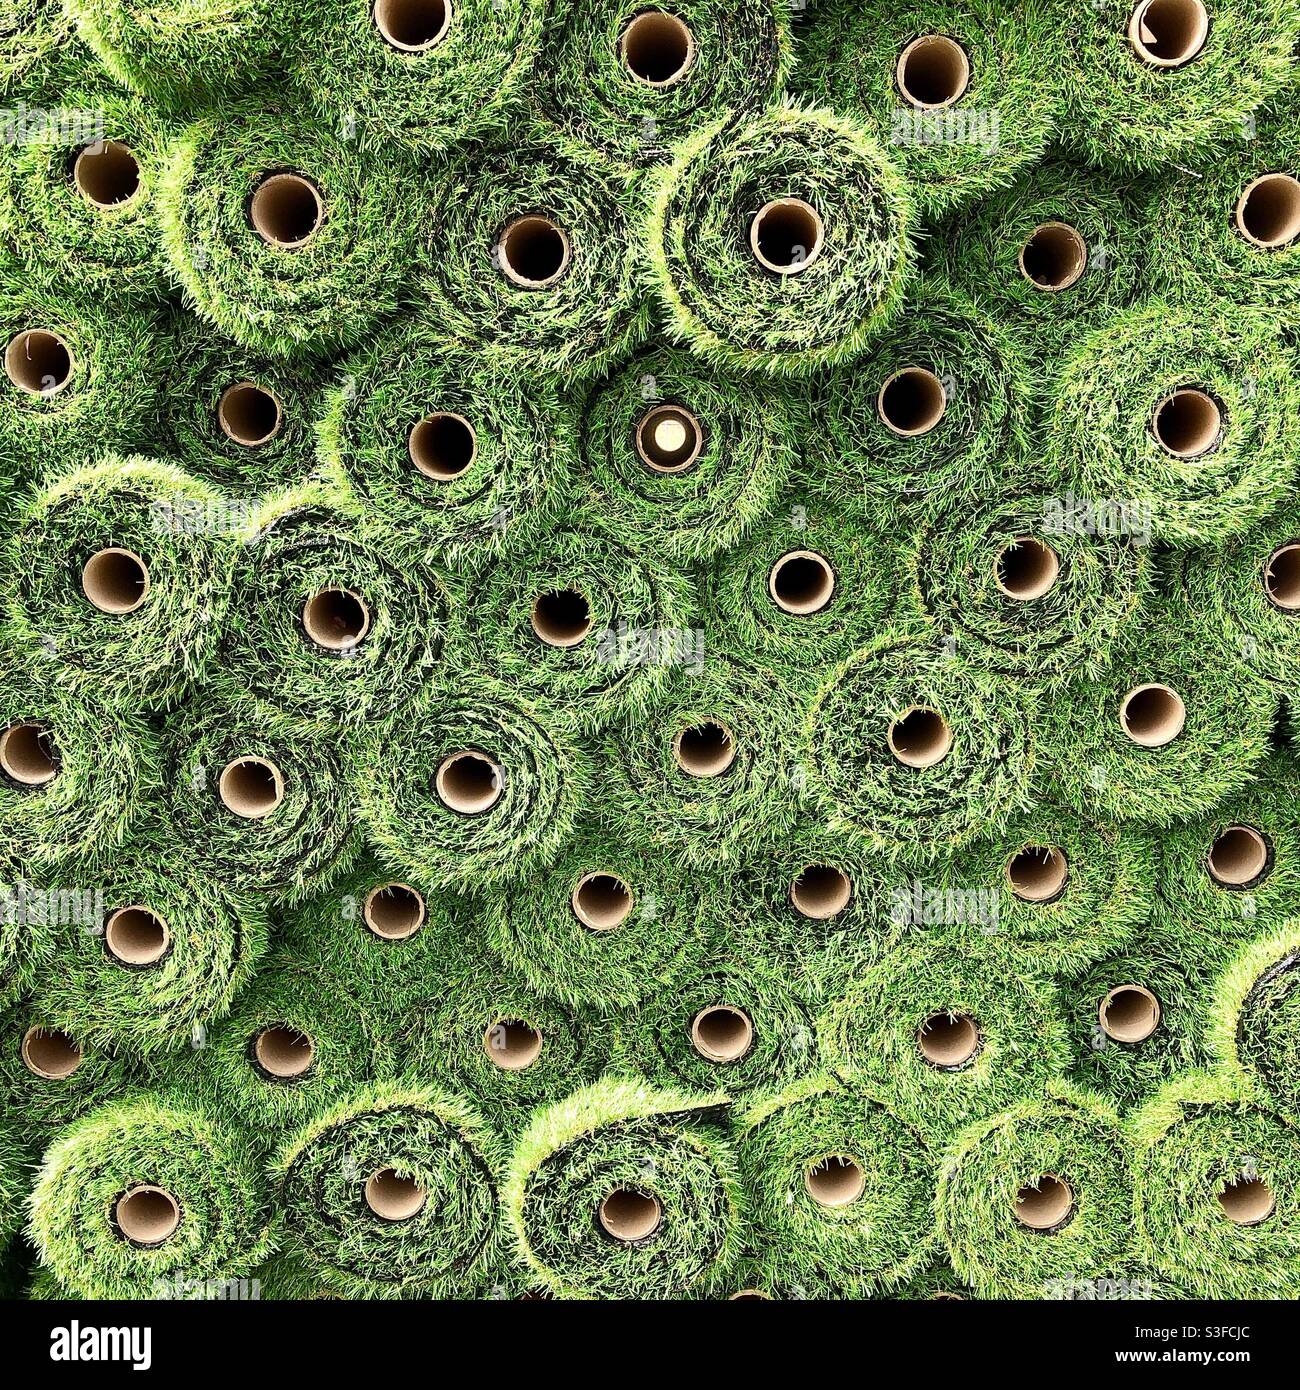 Pile de rouleaux de tapis d'herbe artificielle en plastique vert. Banque D'Images